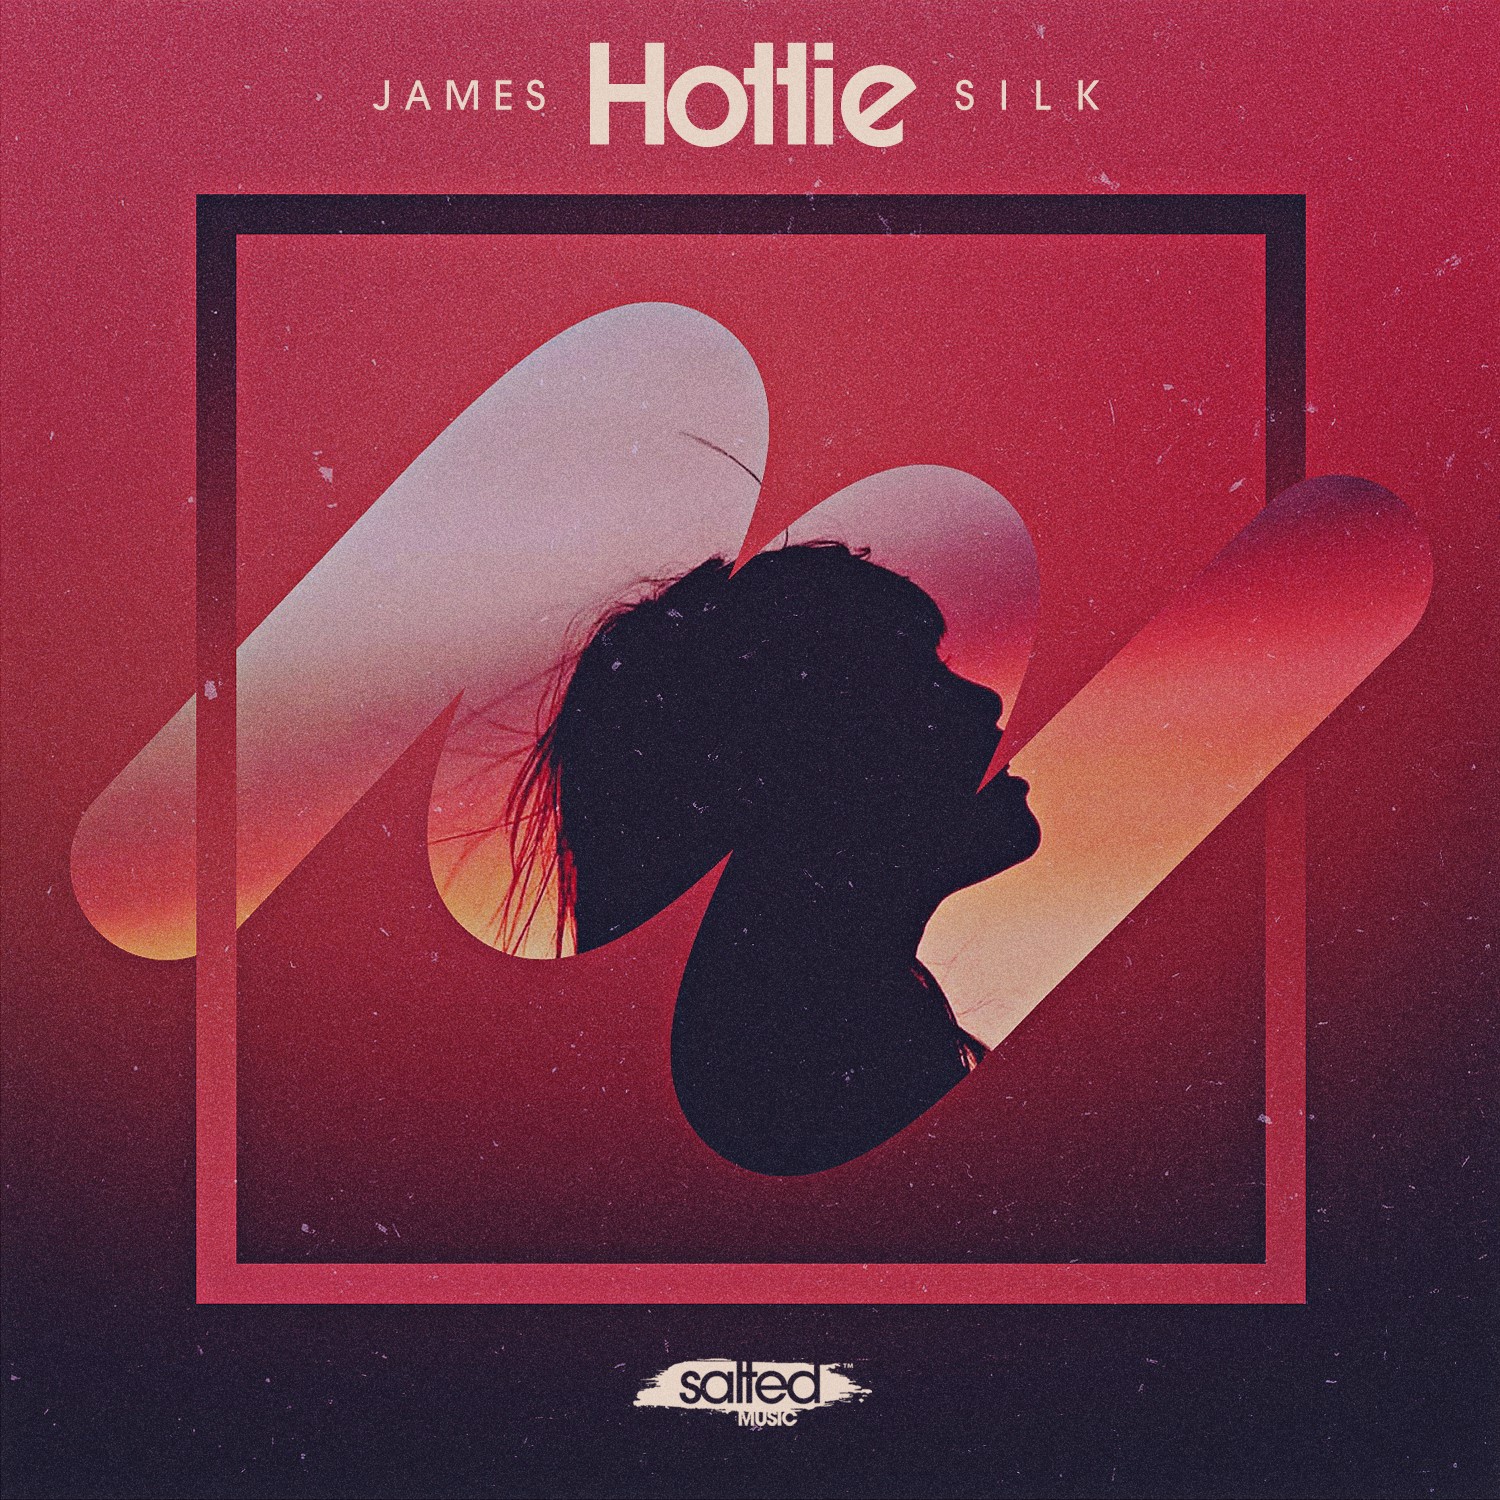 SLT204: James Silk - Hottie (Salted Music)